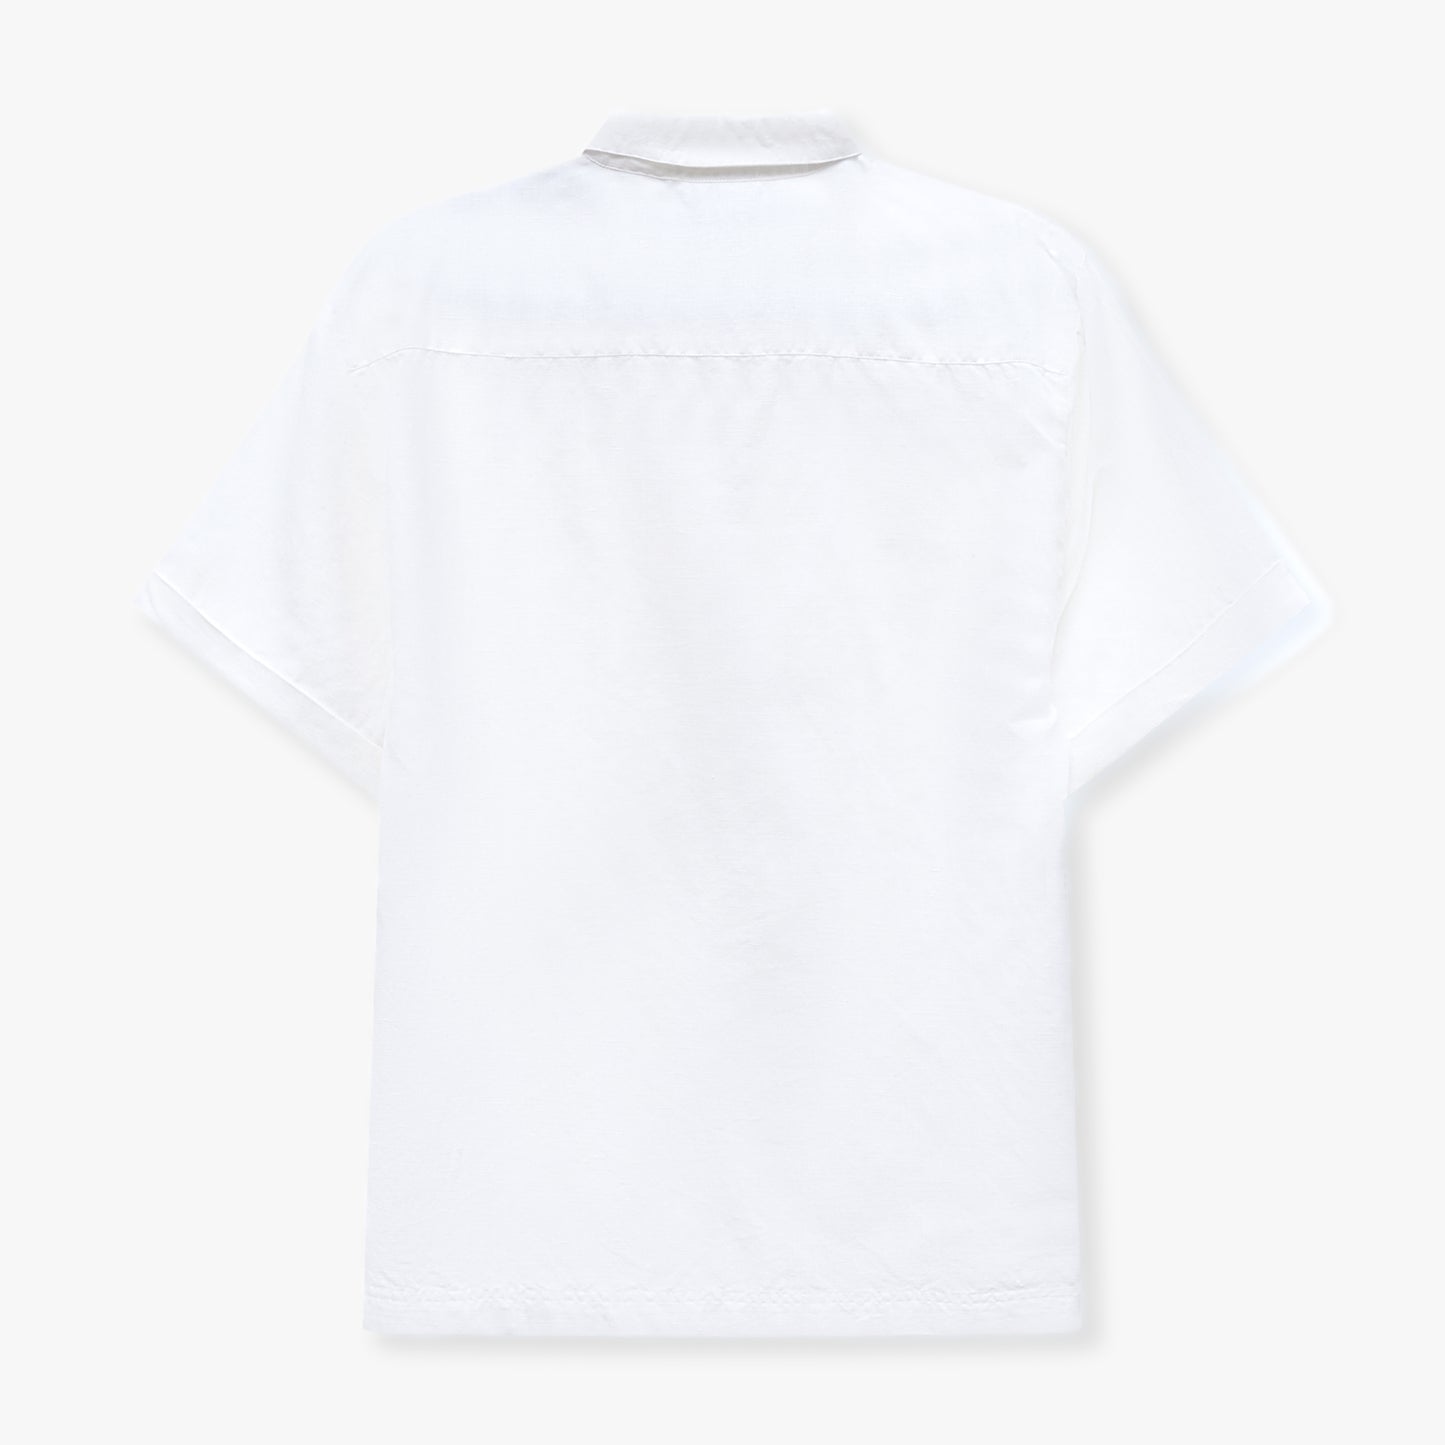 REWEAR قميص مزيج الكتان - أبيض